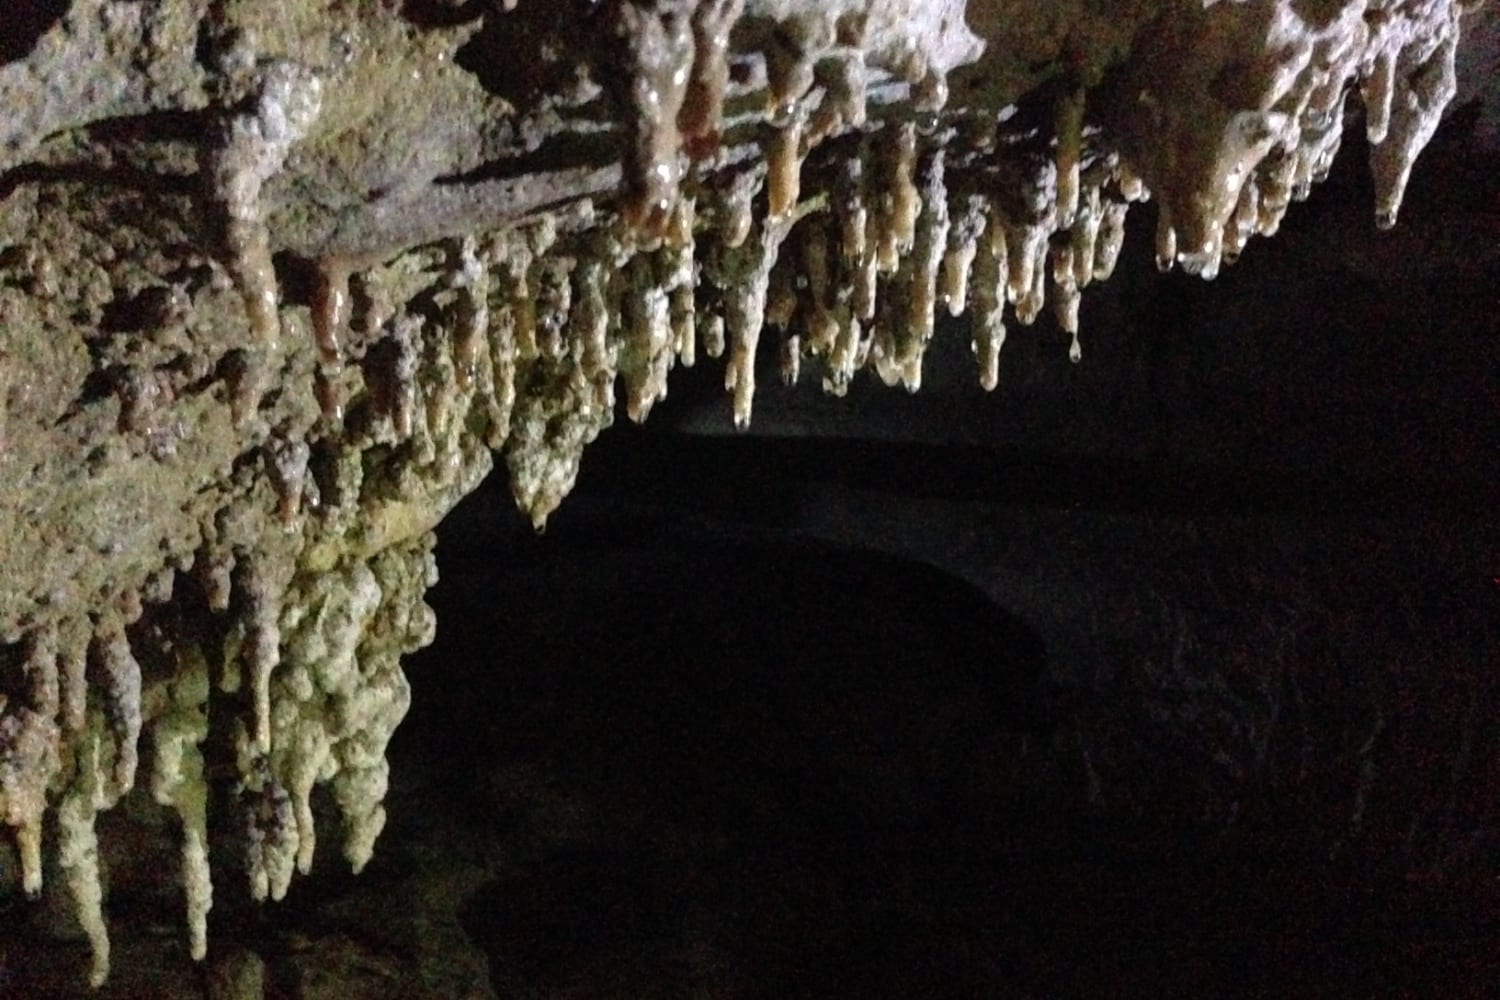 Soda straw stalactite formations - Khoa Sok park